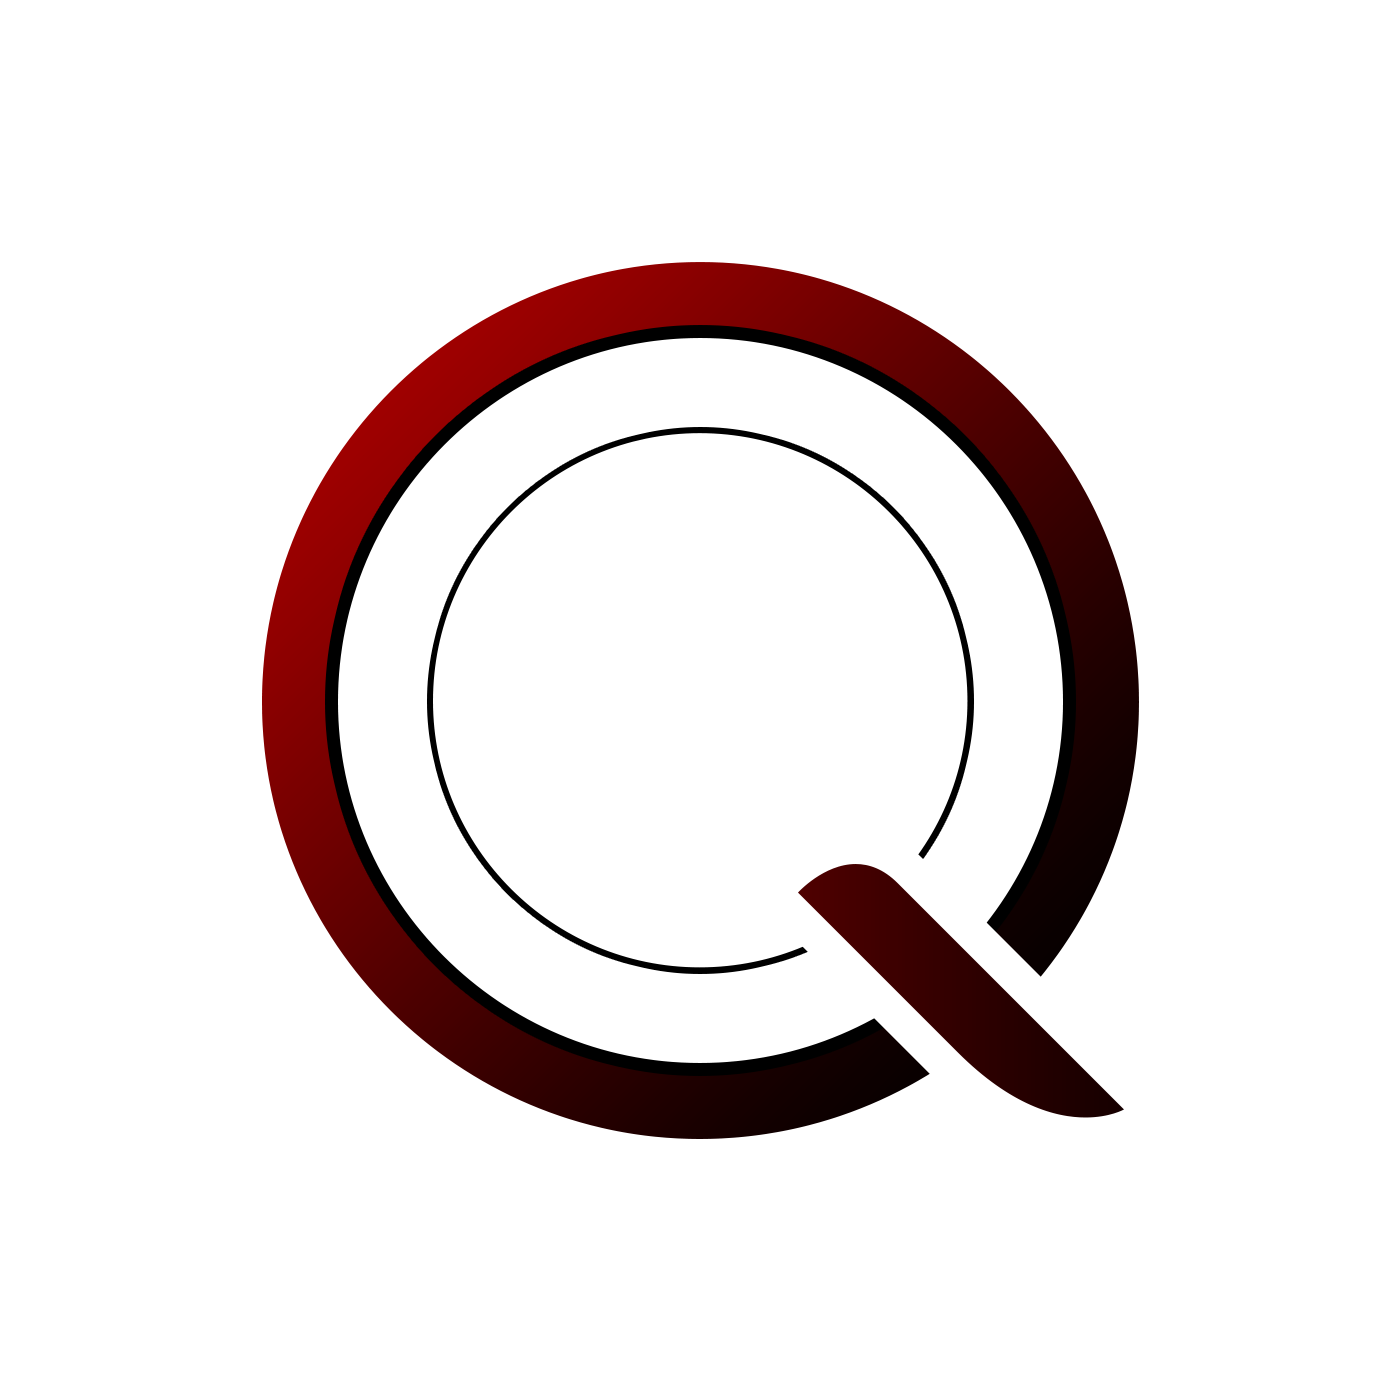 QuteriumProject